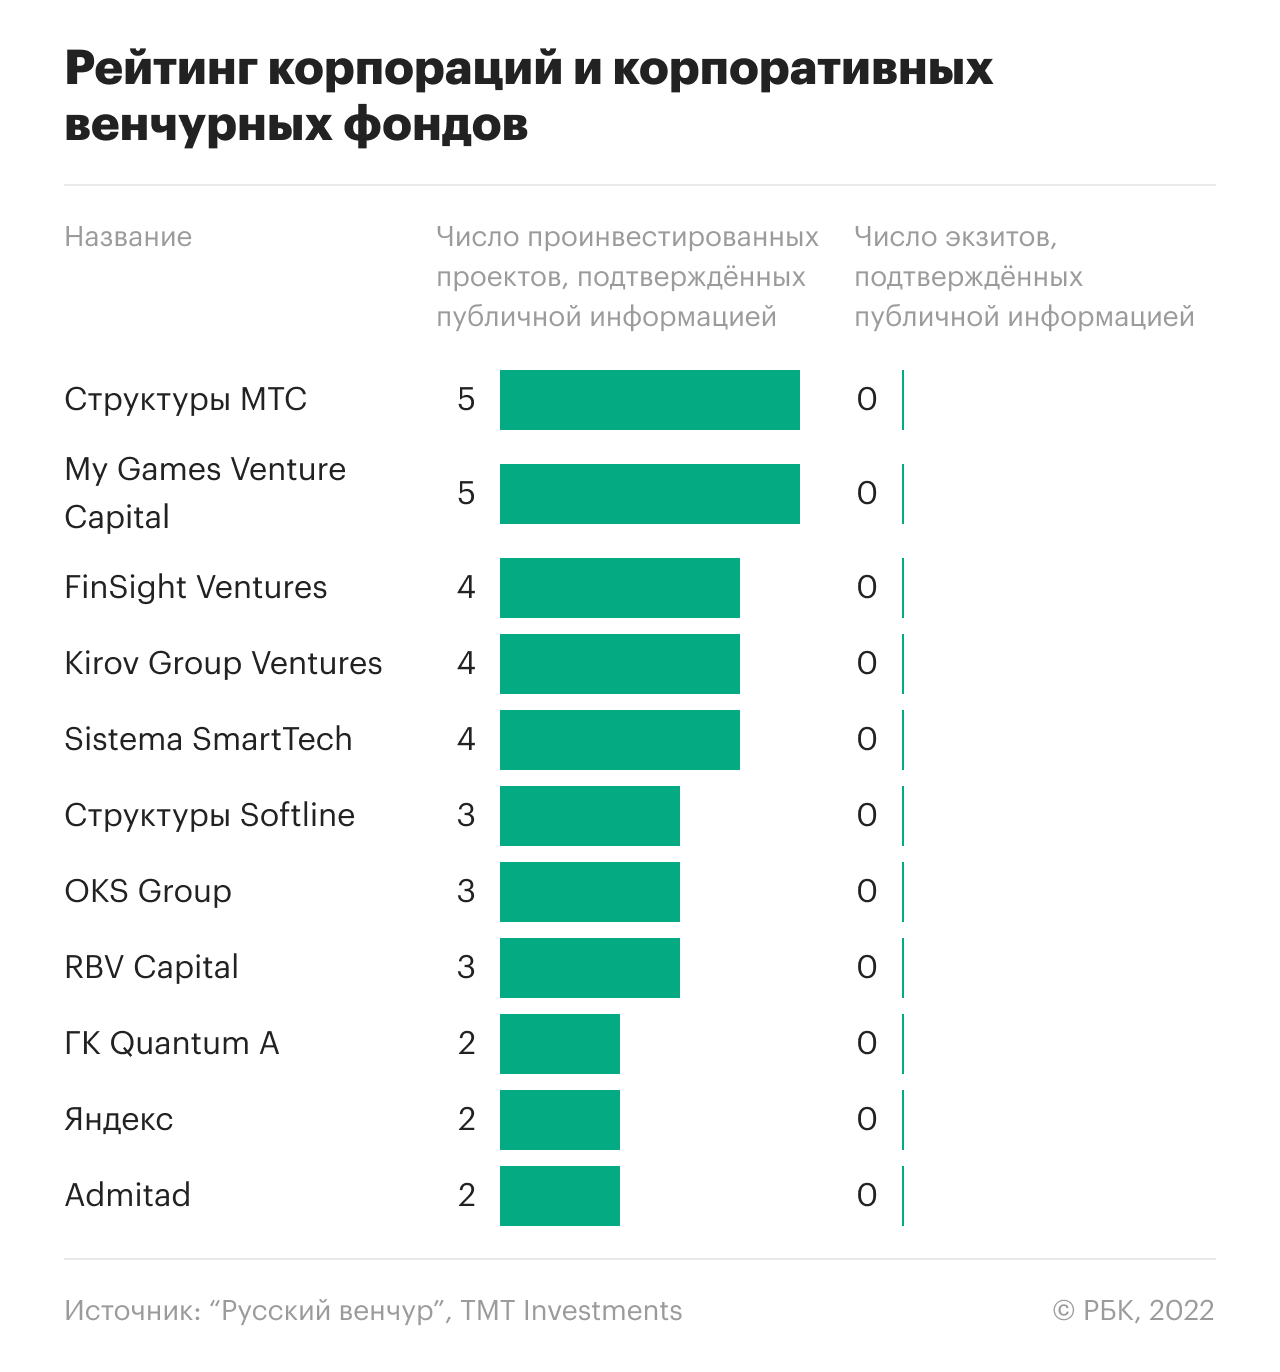 Кто вошел в топ самых активных венчурных фондов России за 2021 год